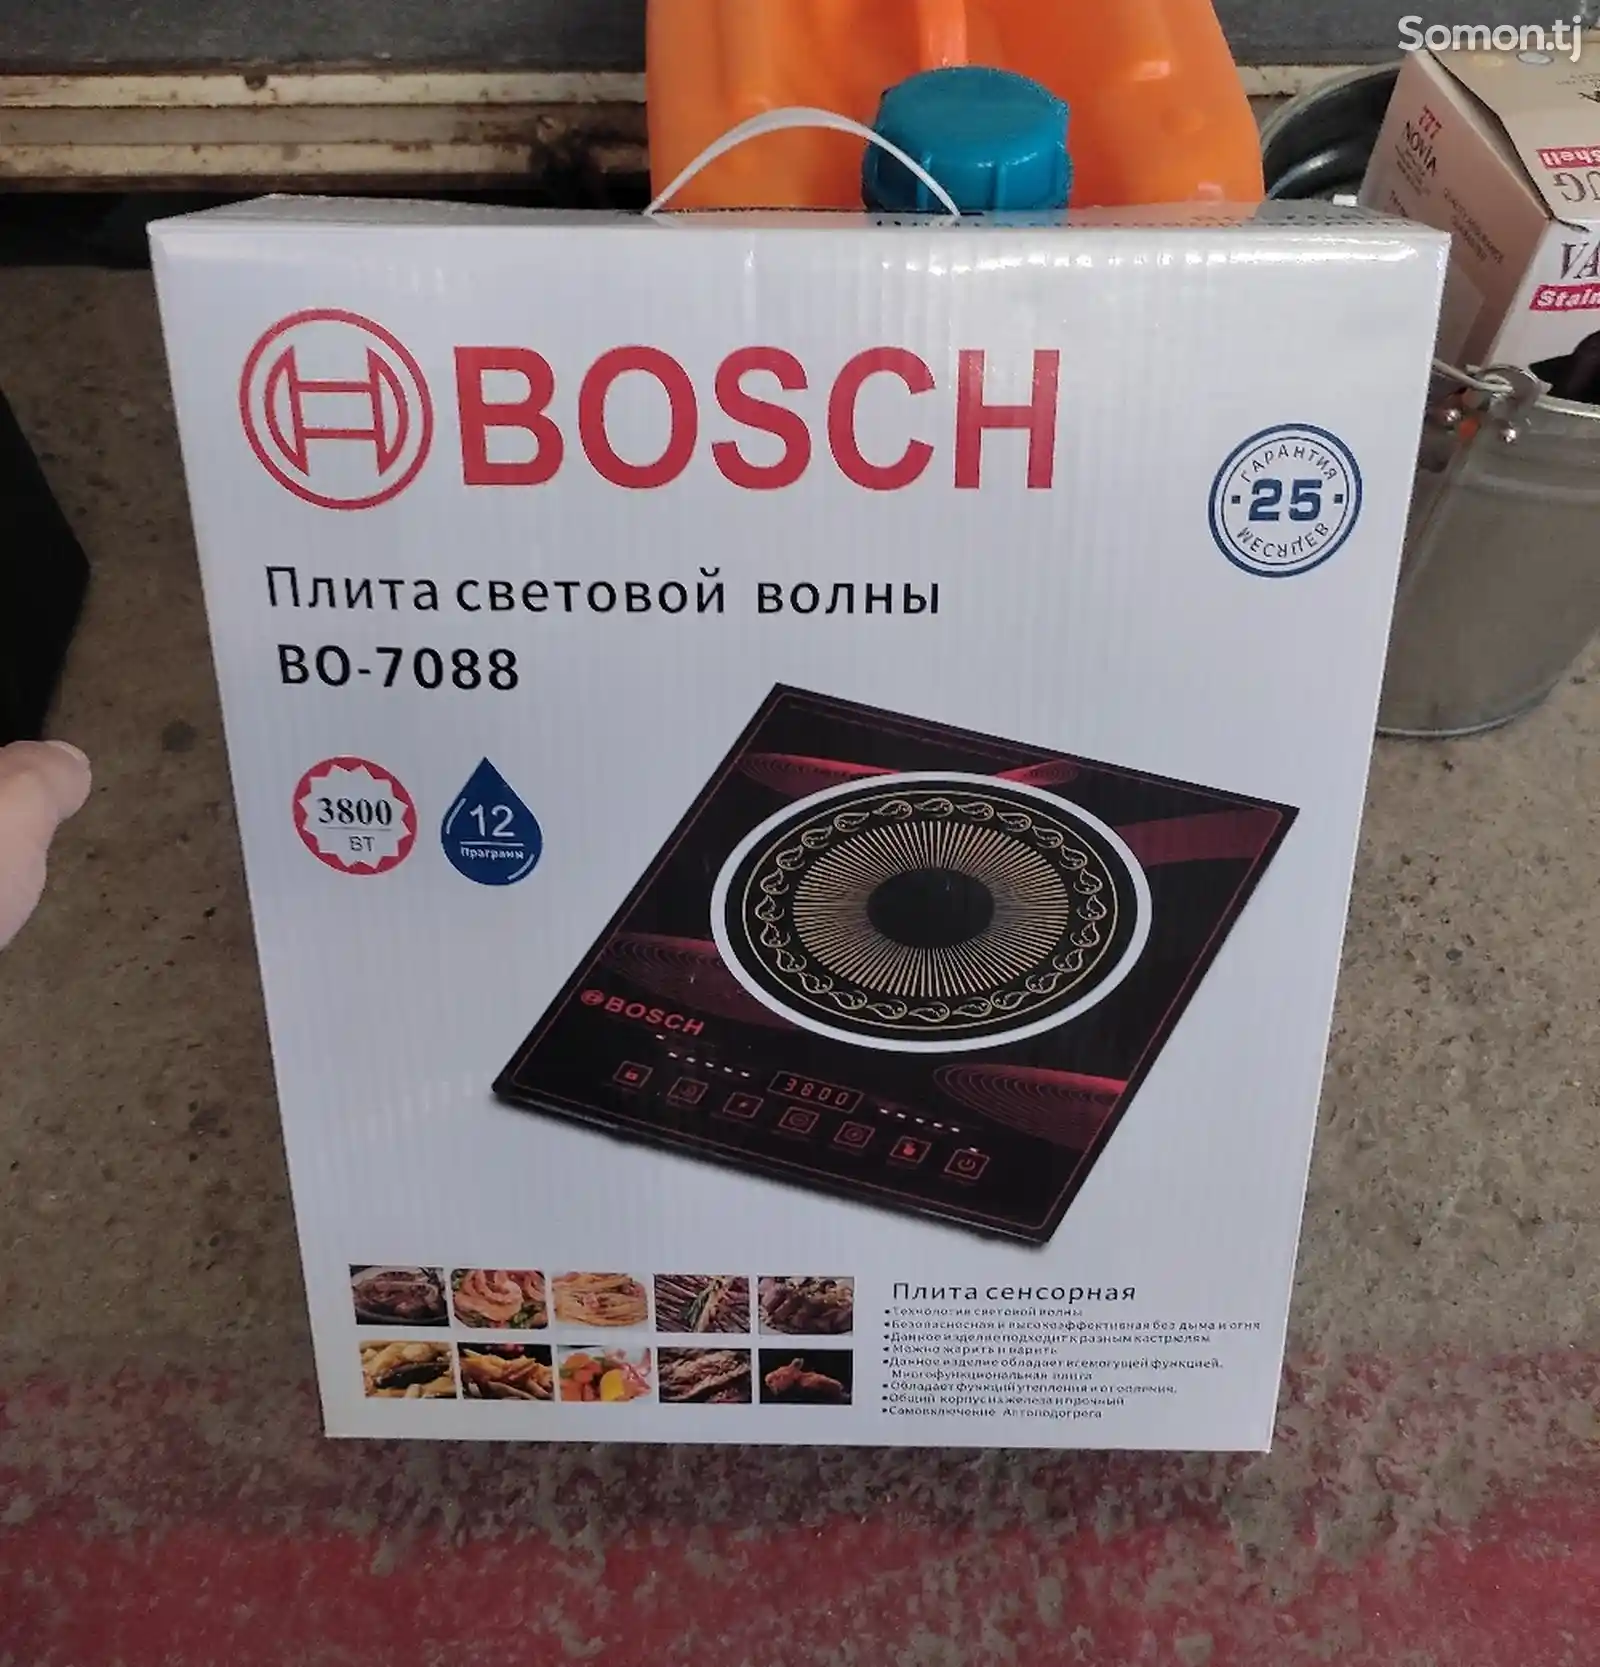 Сенсорная плита Bosch BY-7088-1